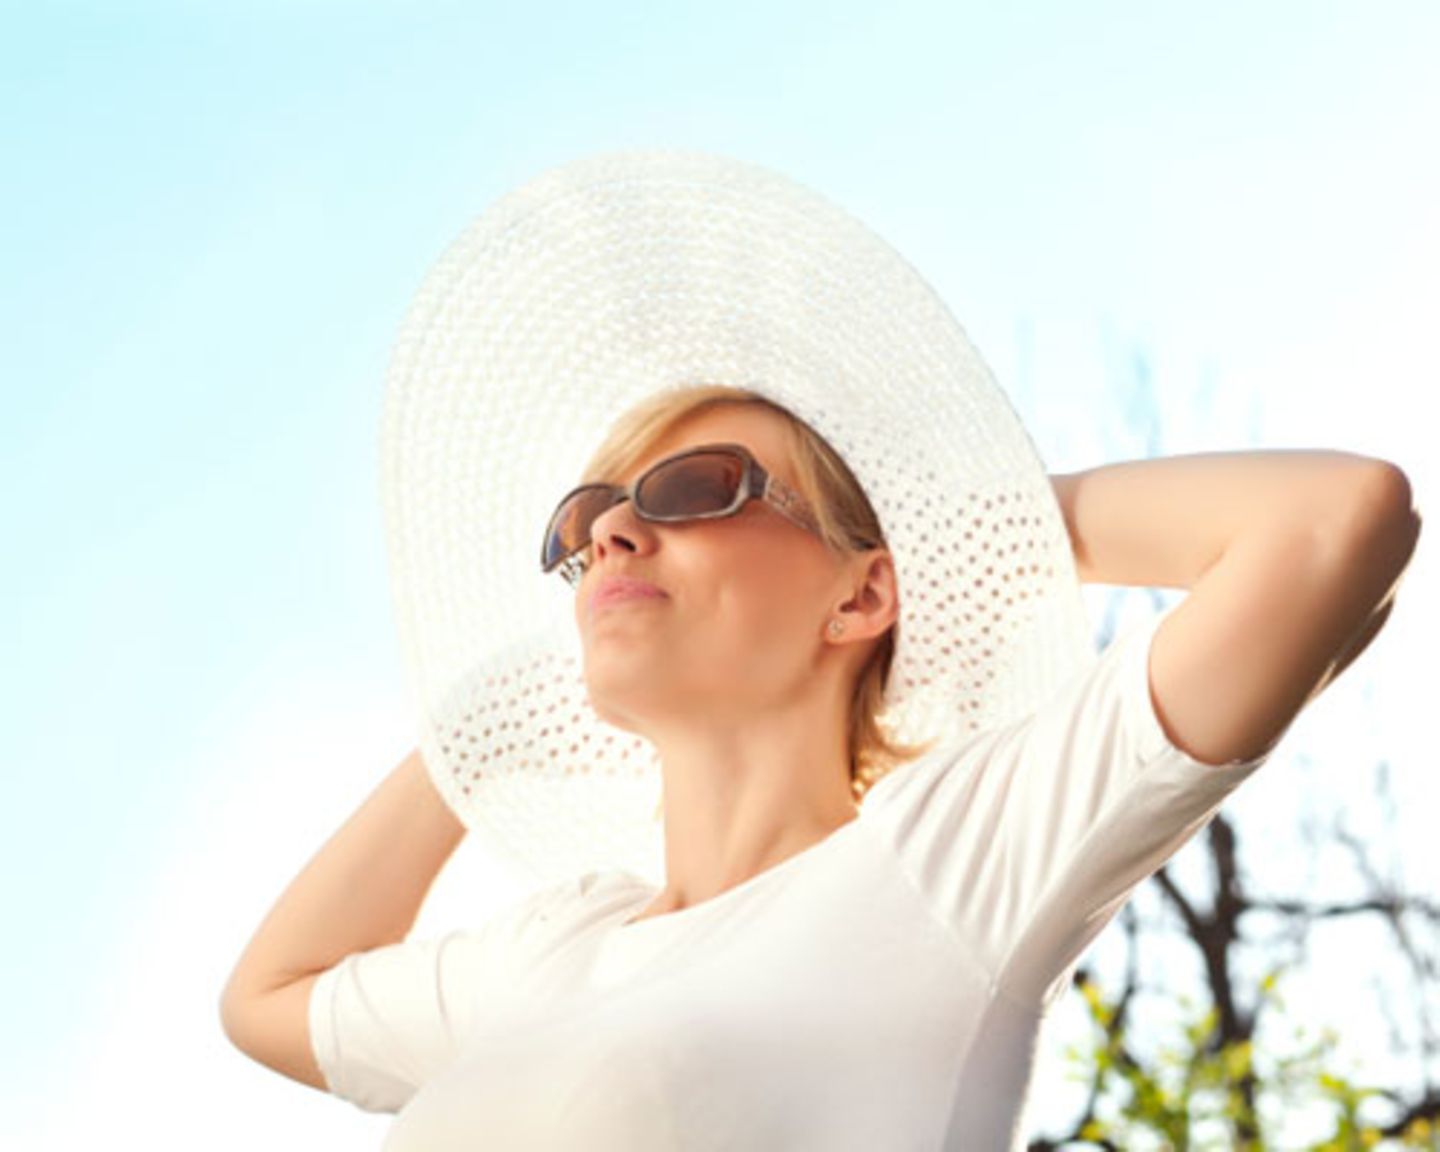 Sonnenschutz-Irrtümer: 1. Nur UV-B-Strahlen sind gefährlich